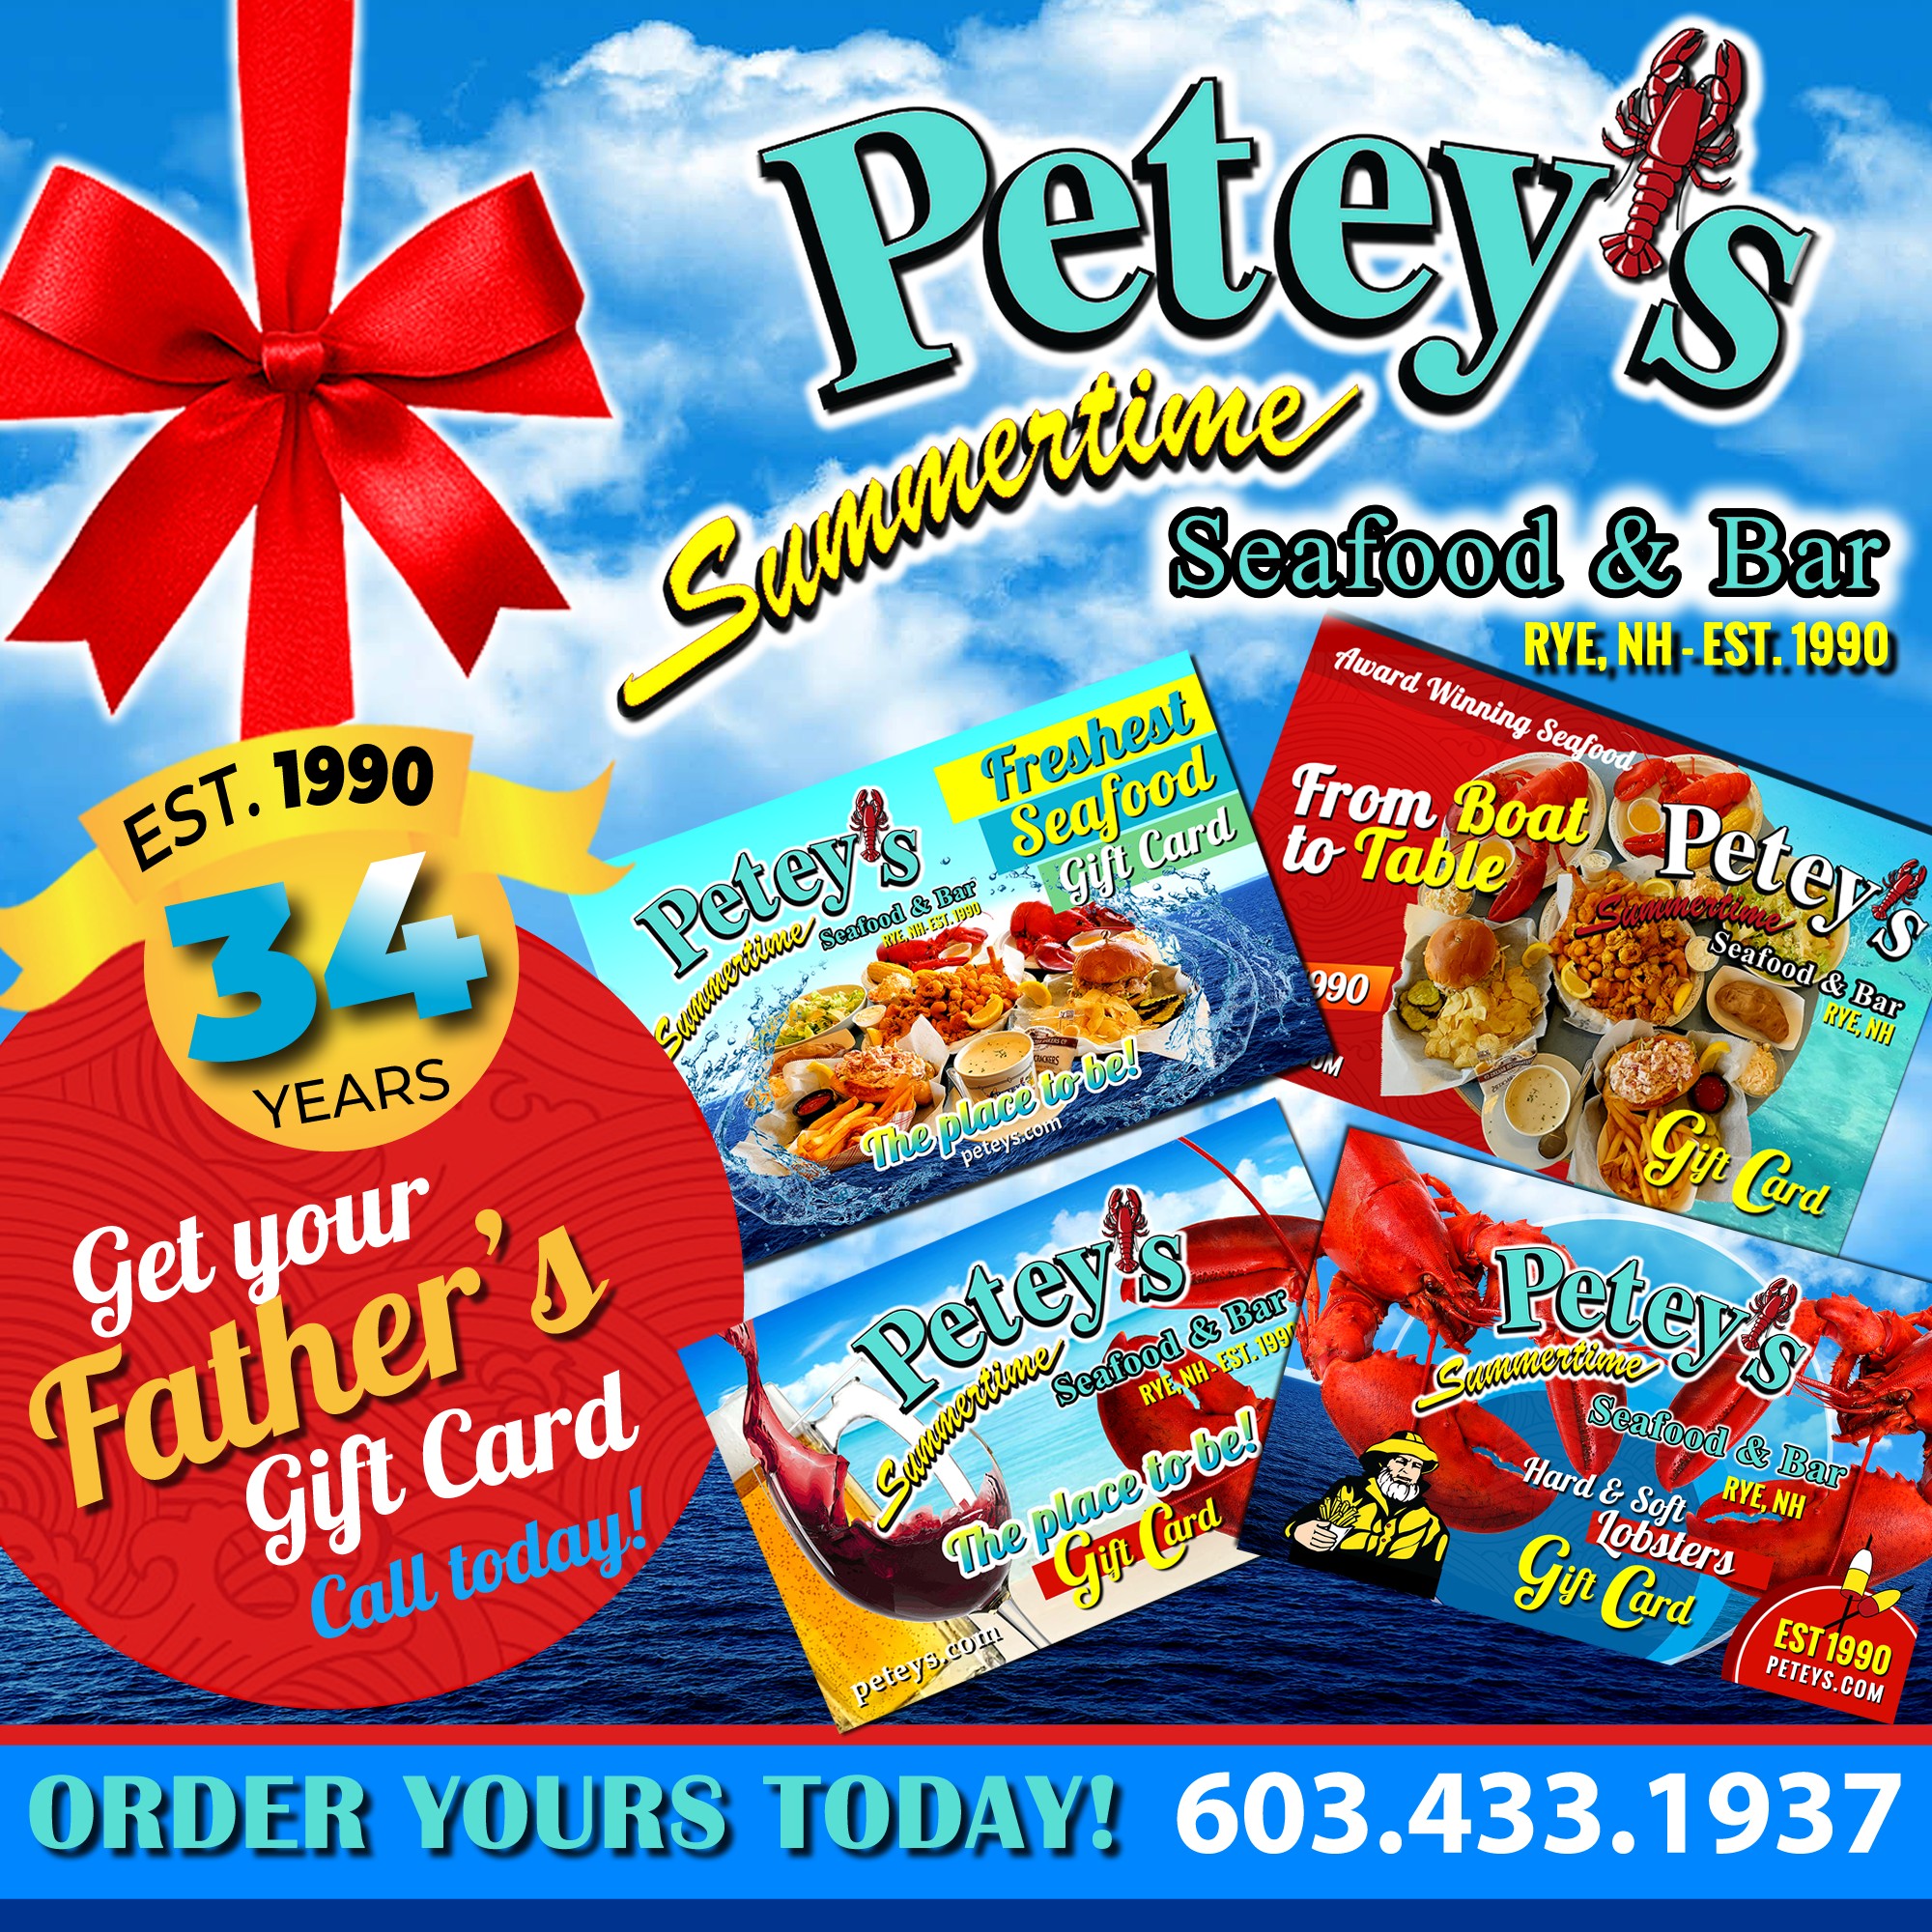 Petey's Summertime Seafood 1323 Ocean Blvd, Rye, NH 03870